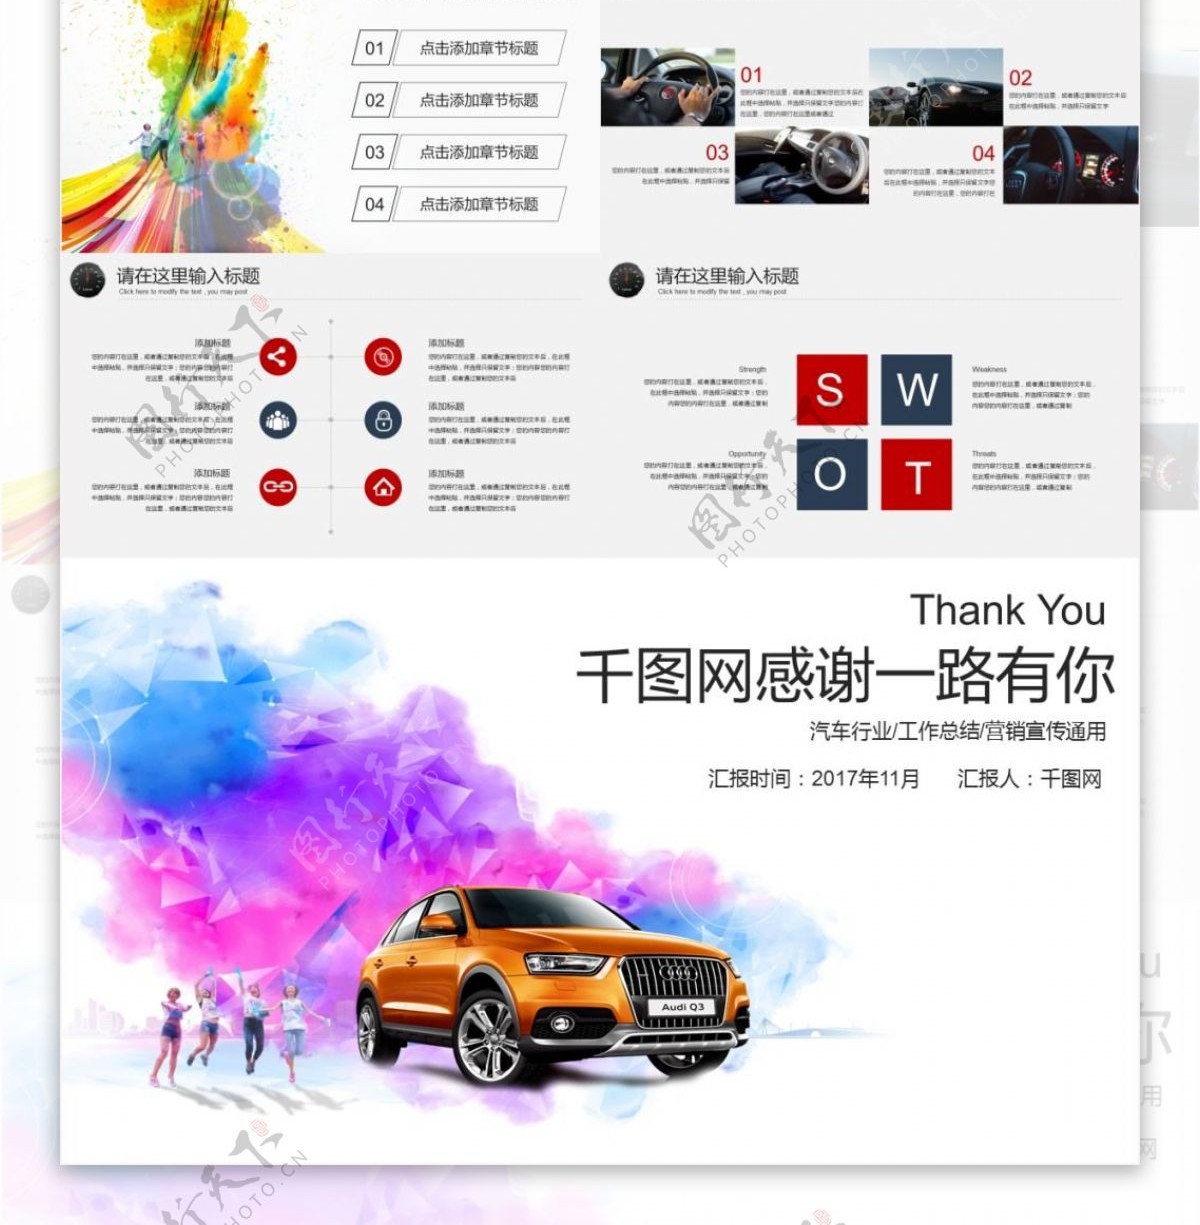 炫彩汽车行业营销宣传PPT模板